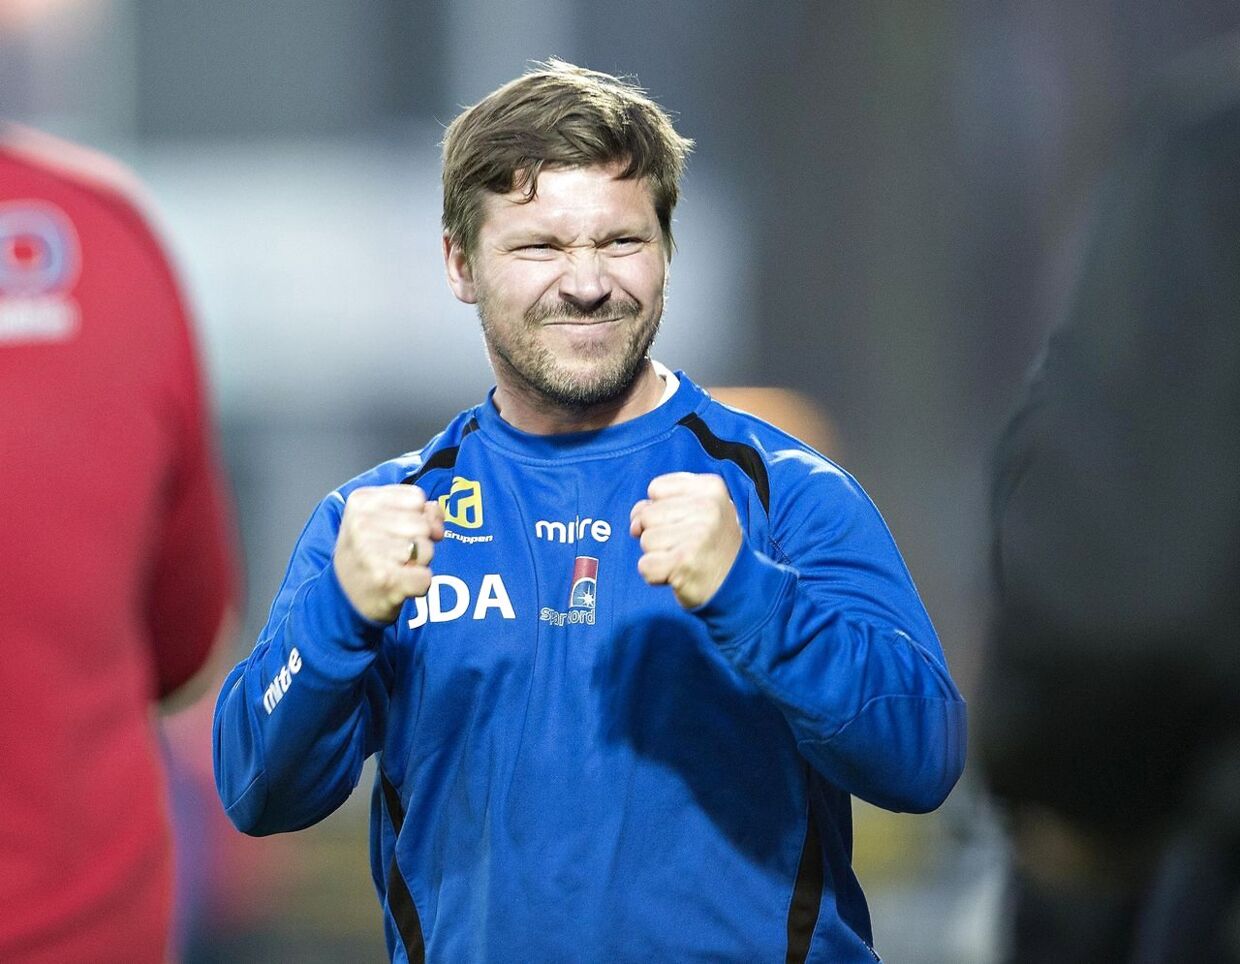 Jonas Dal bliver ny Esbjerg-træner ifølge BT's oplysninger.